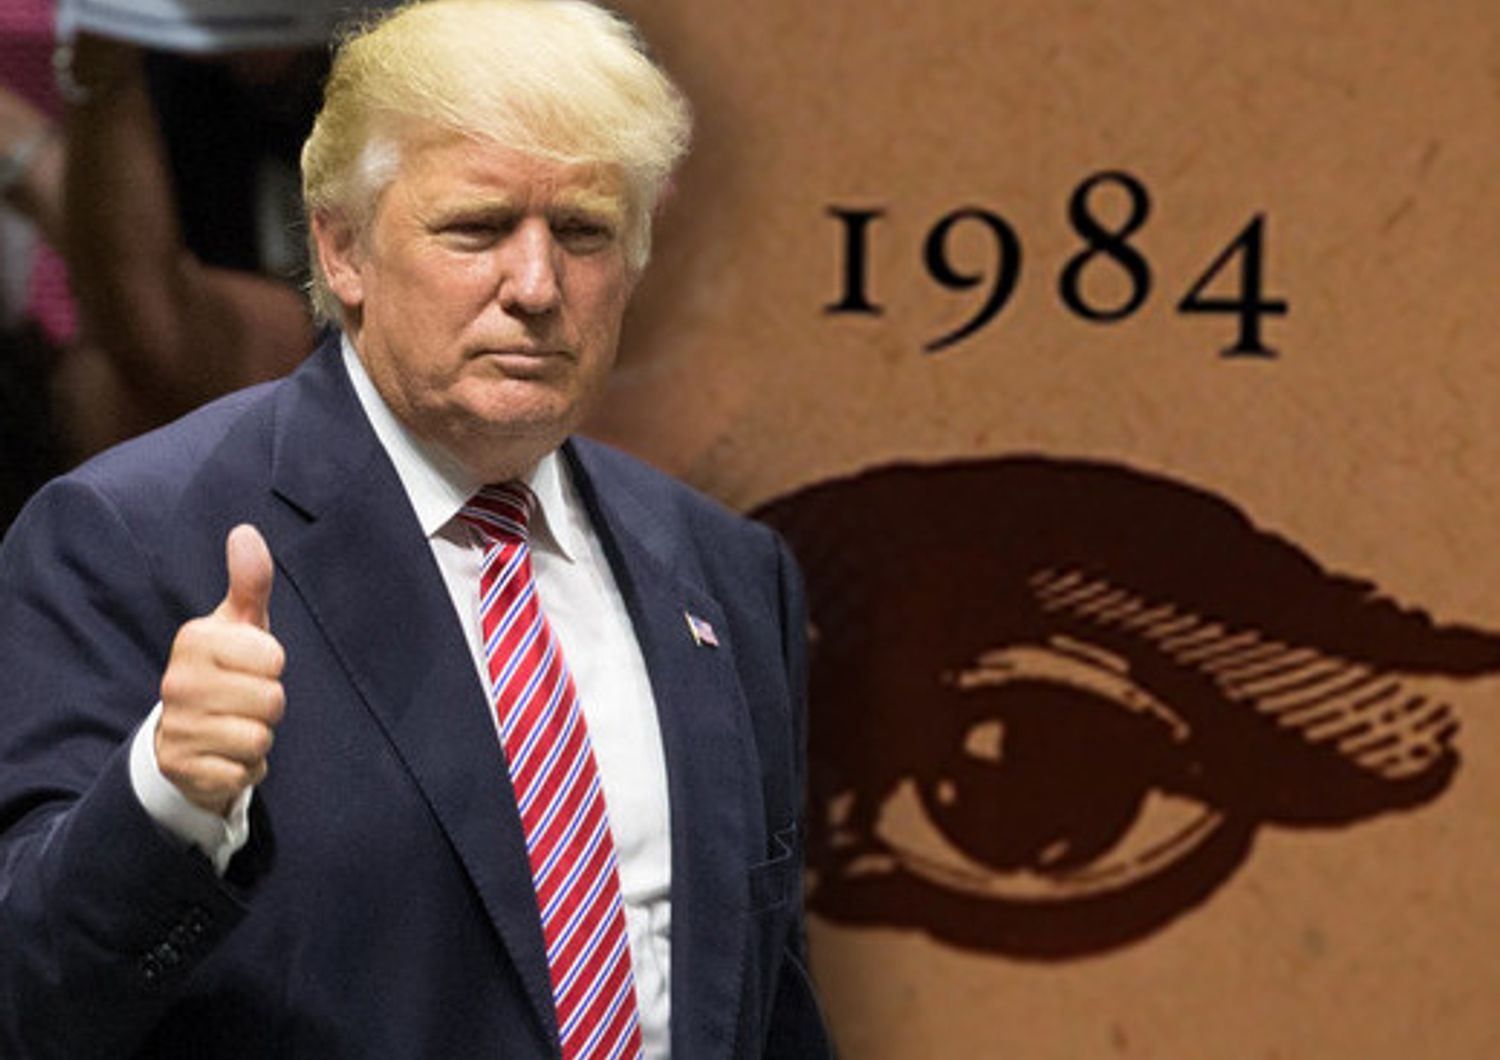 Un Grande Fratello alla Casa Bianca? Boom di vendite per 1984 di Orwell